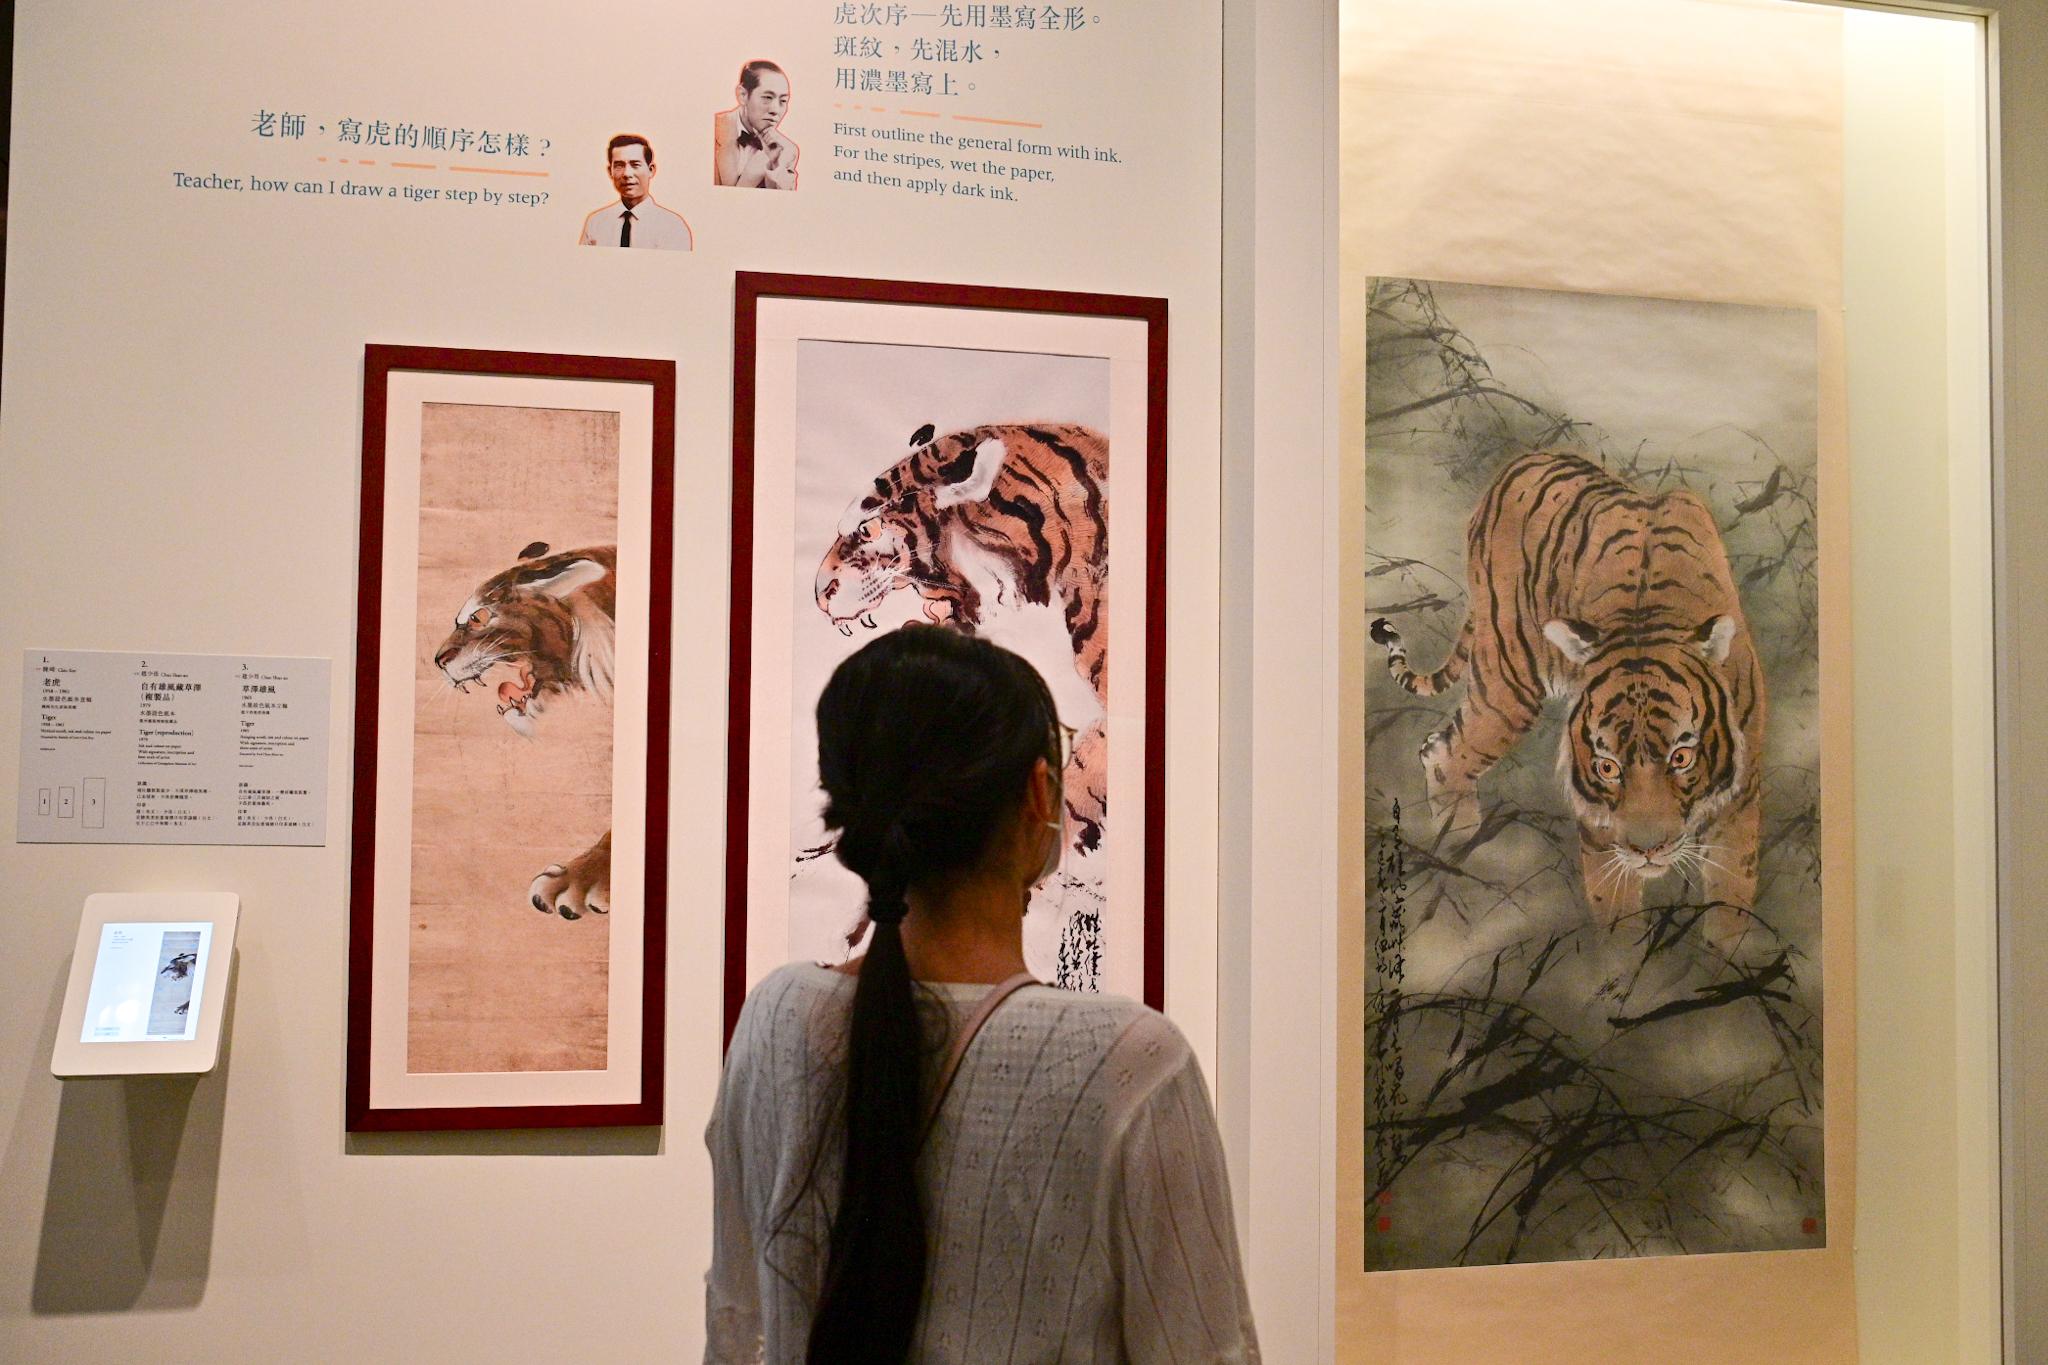 香港文化博物館明日（九月二十一日）起舉行「千里覓藝—趙少昂與陳崎師生對話」展覽。圖示趙少昂與陳崎關於老虎的畫作。左起：陳崎作品《老虎》、趙少昂作品《自有雄風藏草澤》（複製品）及趙少昂作品《草澤雄風》。